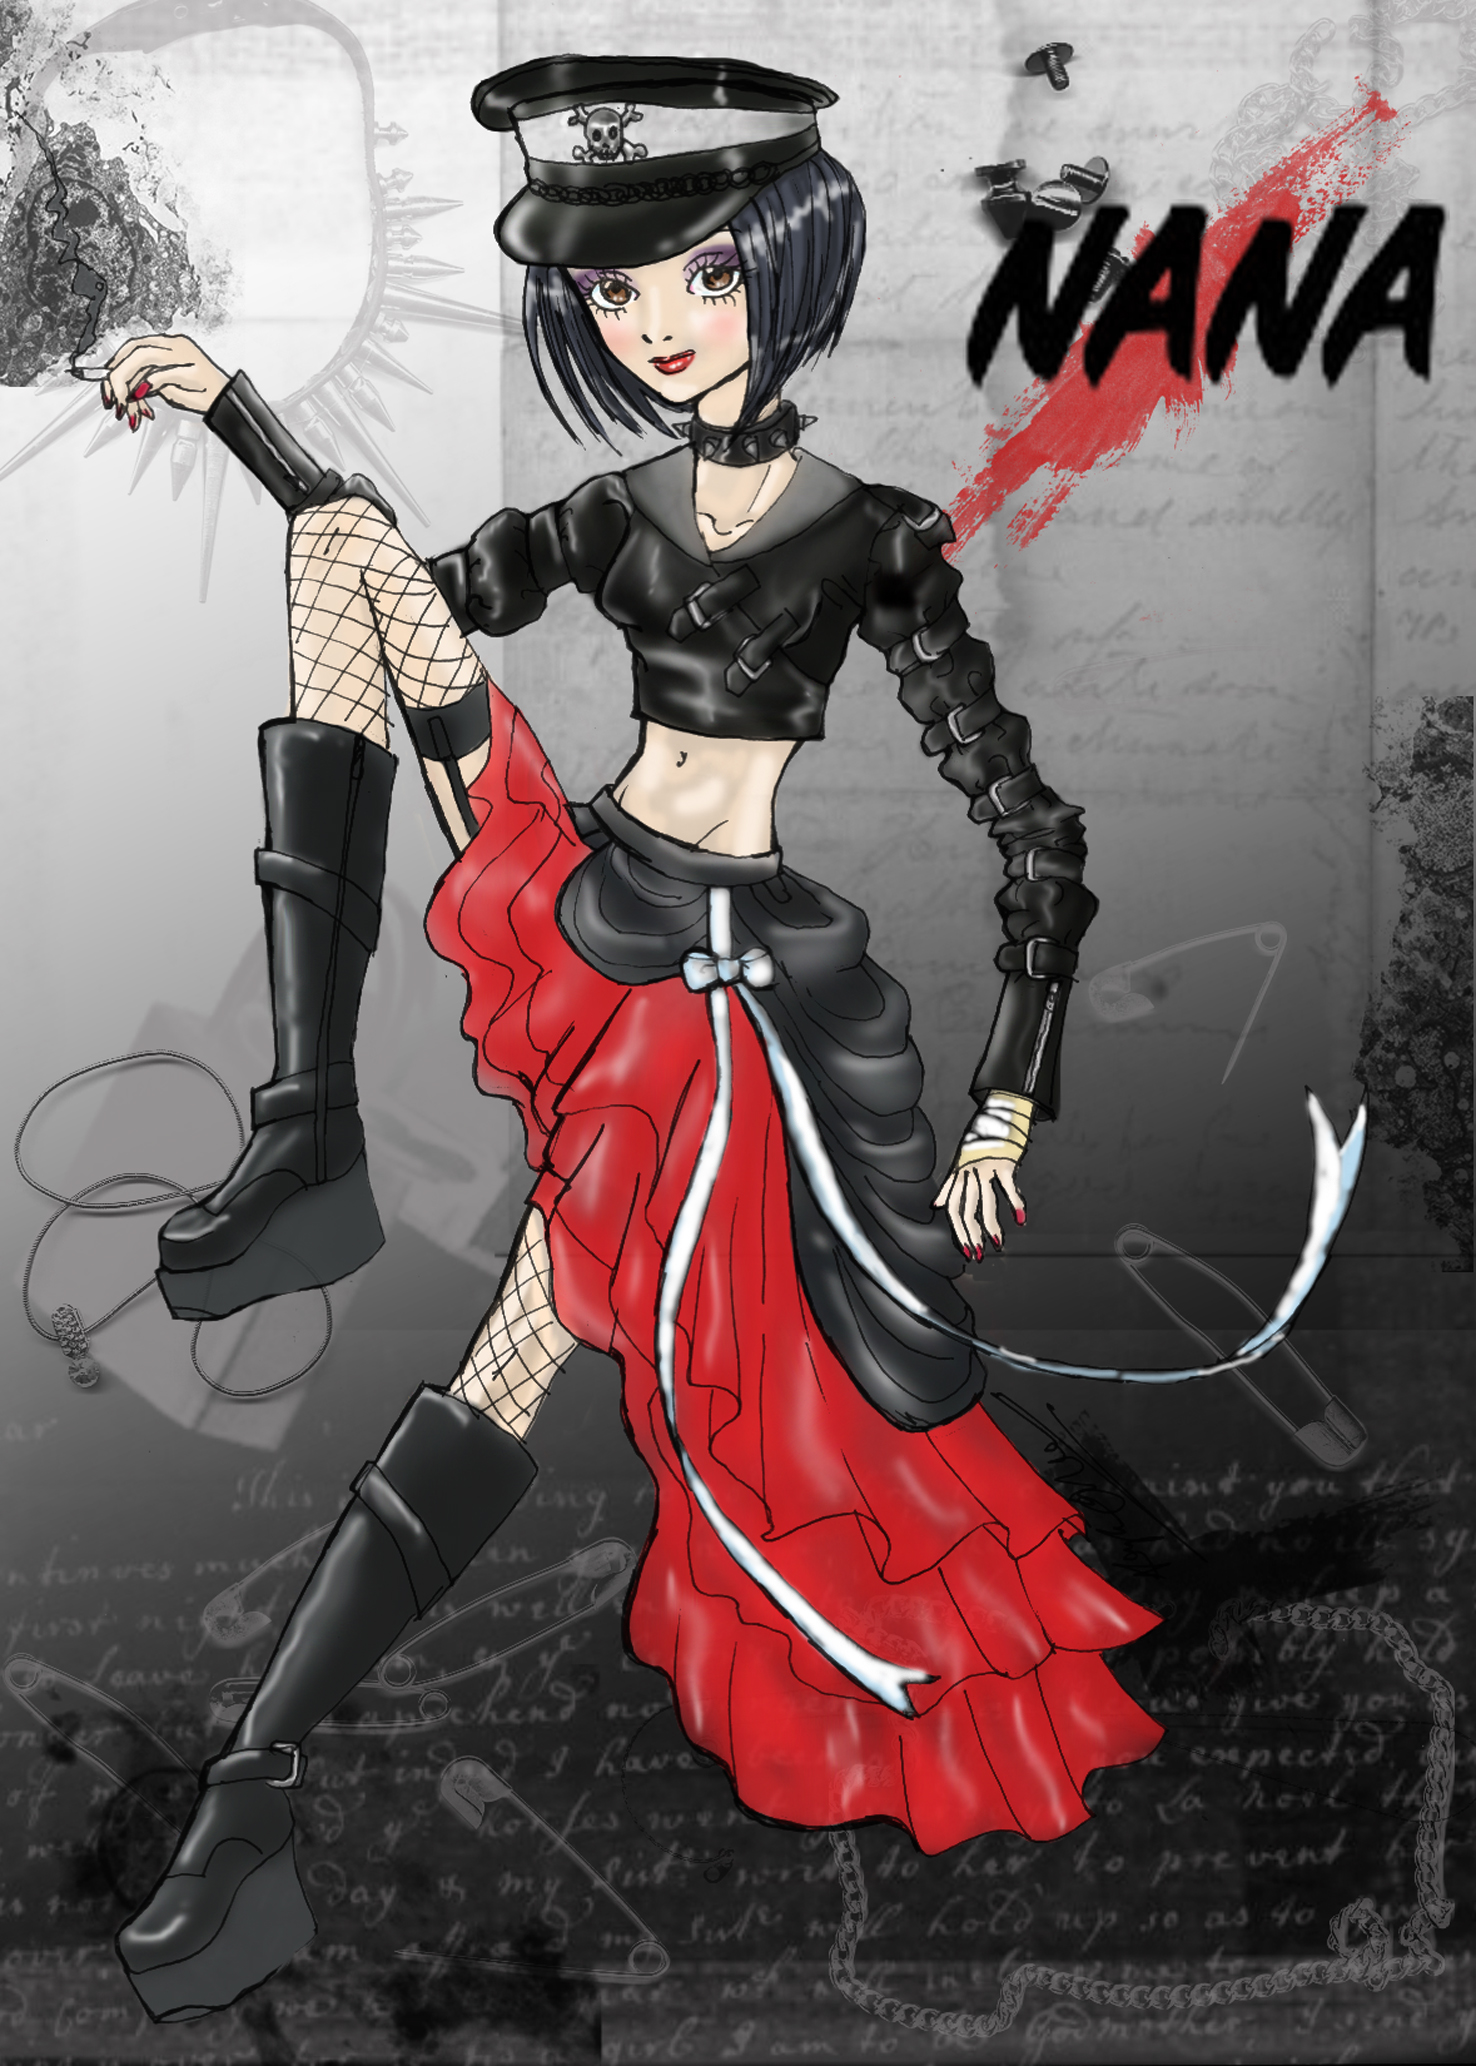 Nana by Kaylove